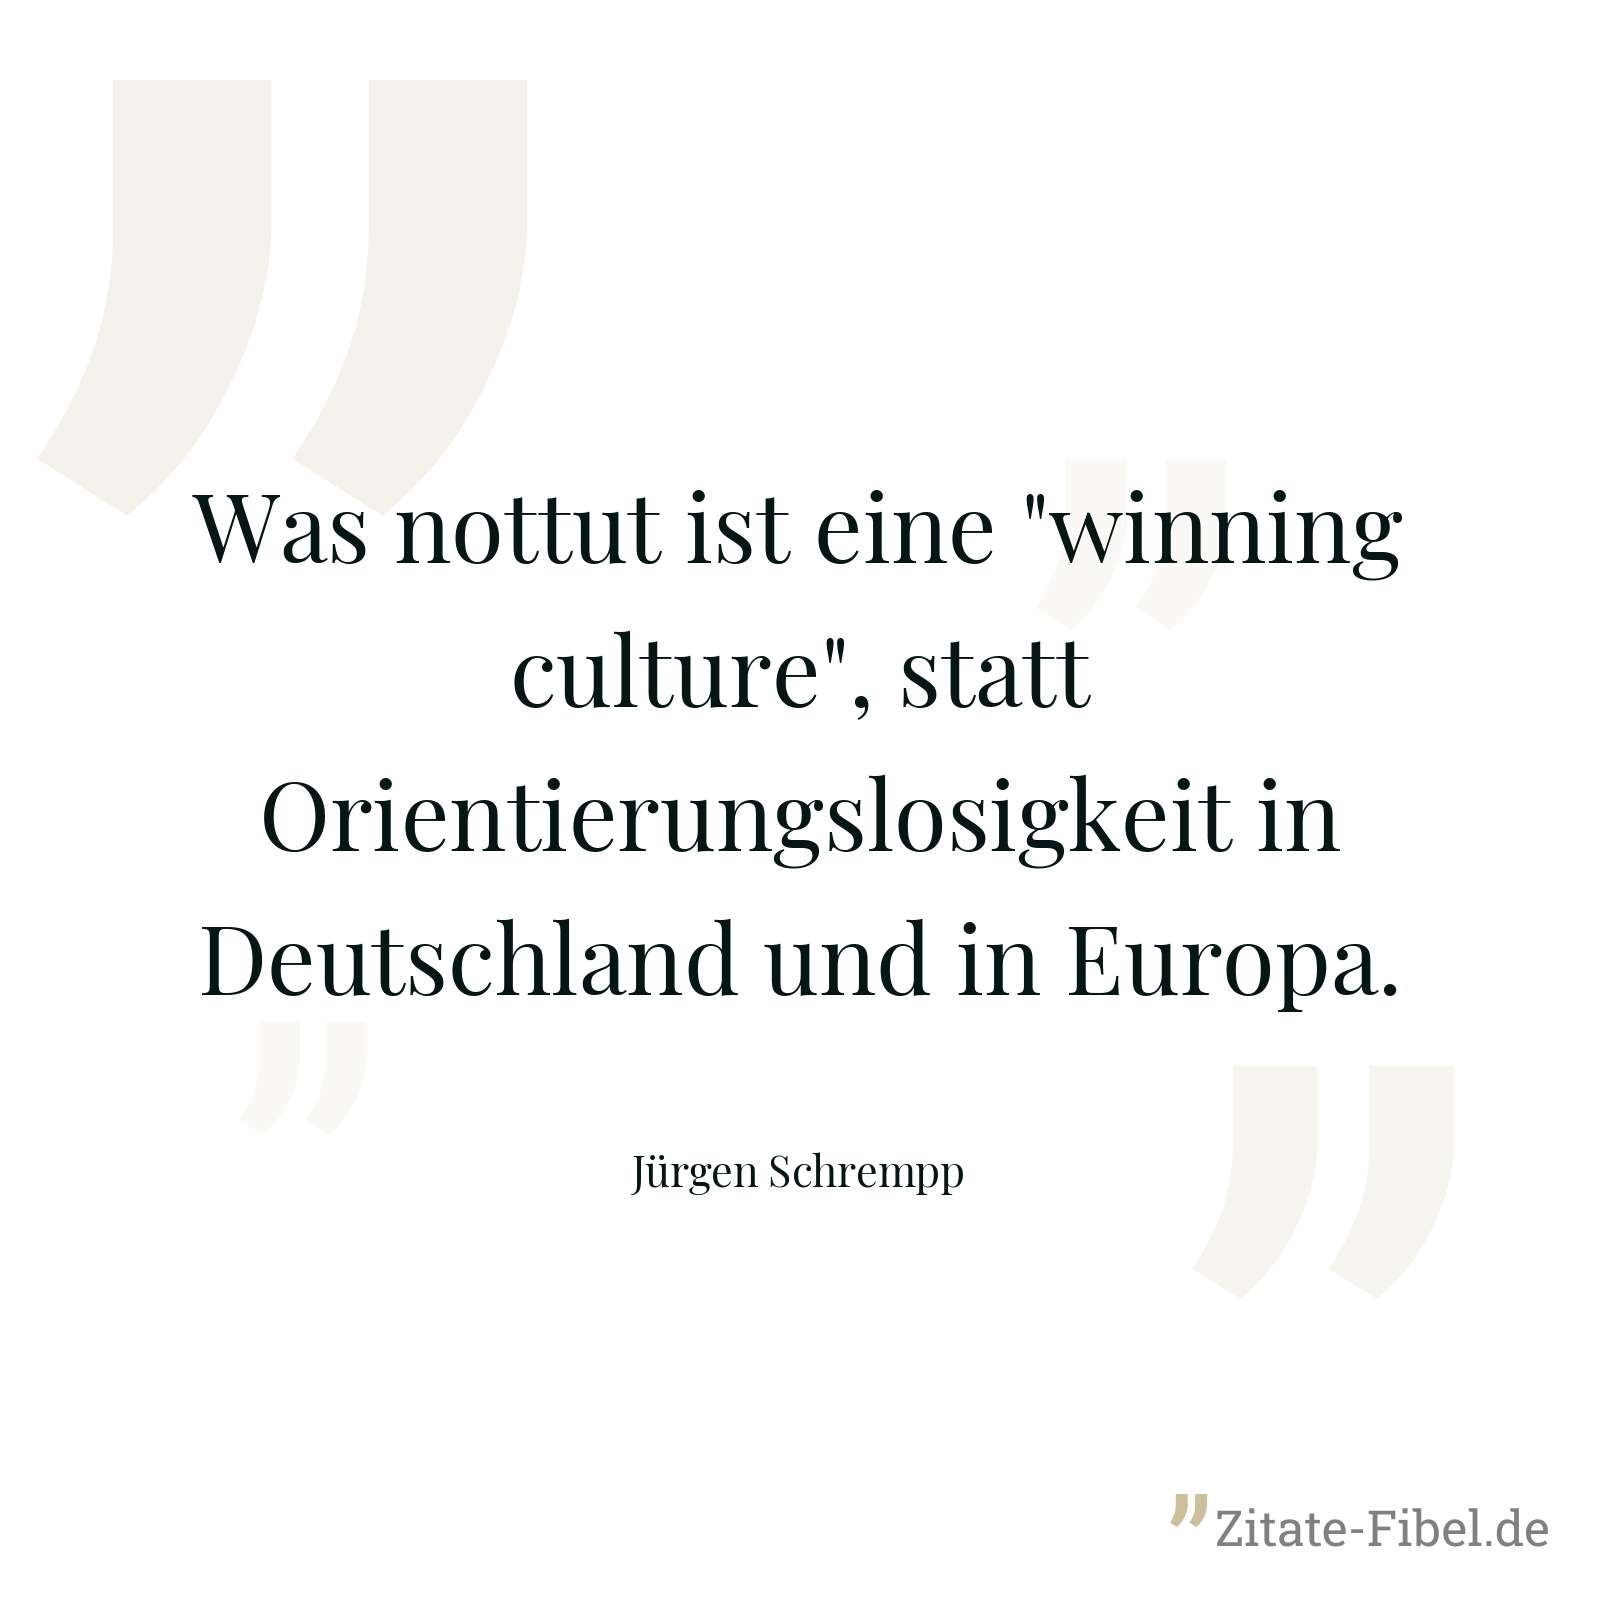 Was nottut ist eine "winning culture", statt Orientierungslosigkeit in Deutschland und in Europa. - Jürgen Schrempp